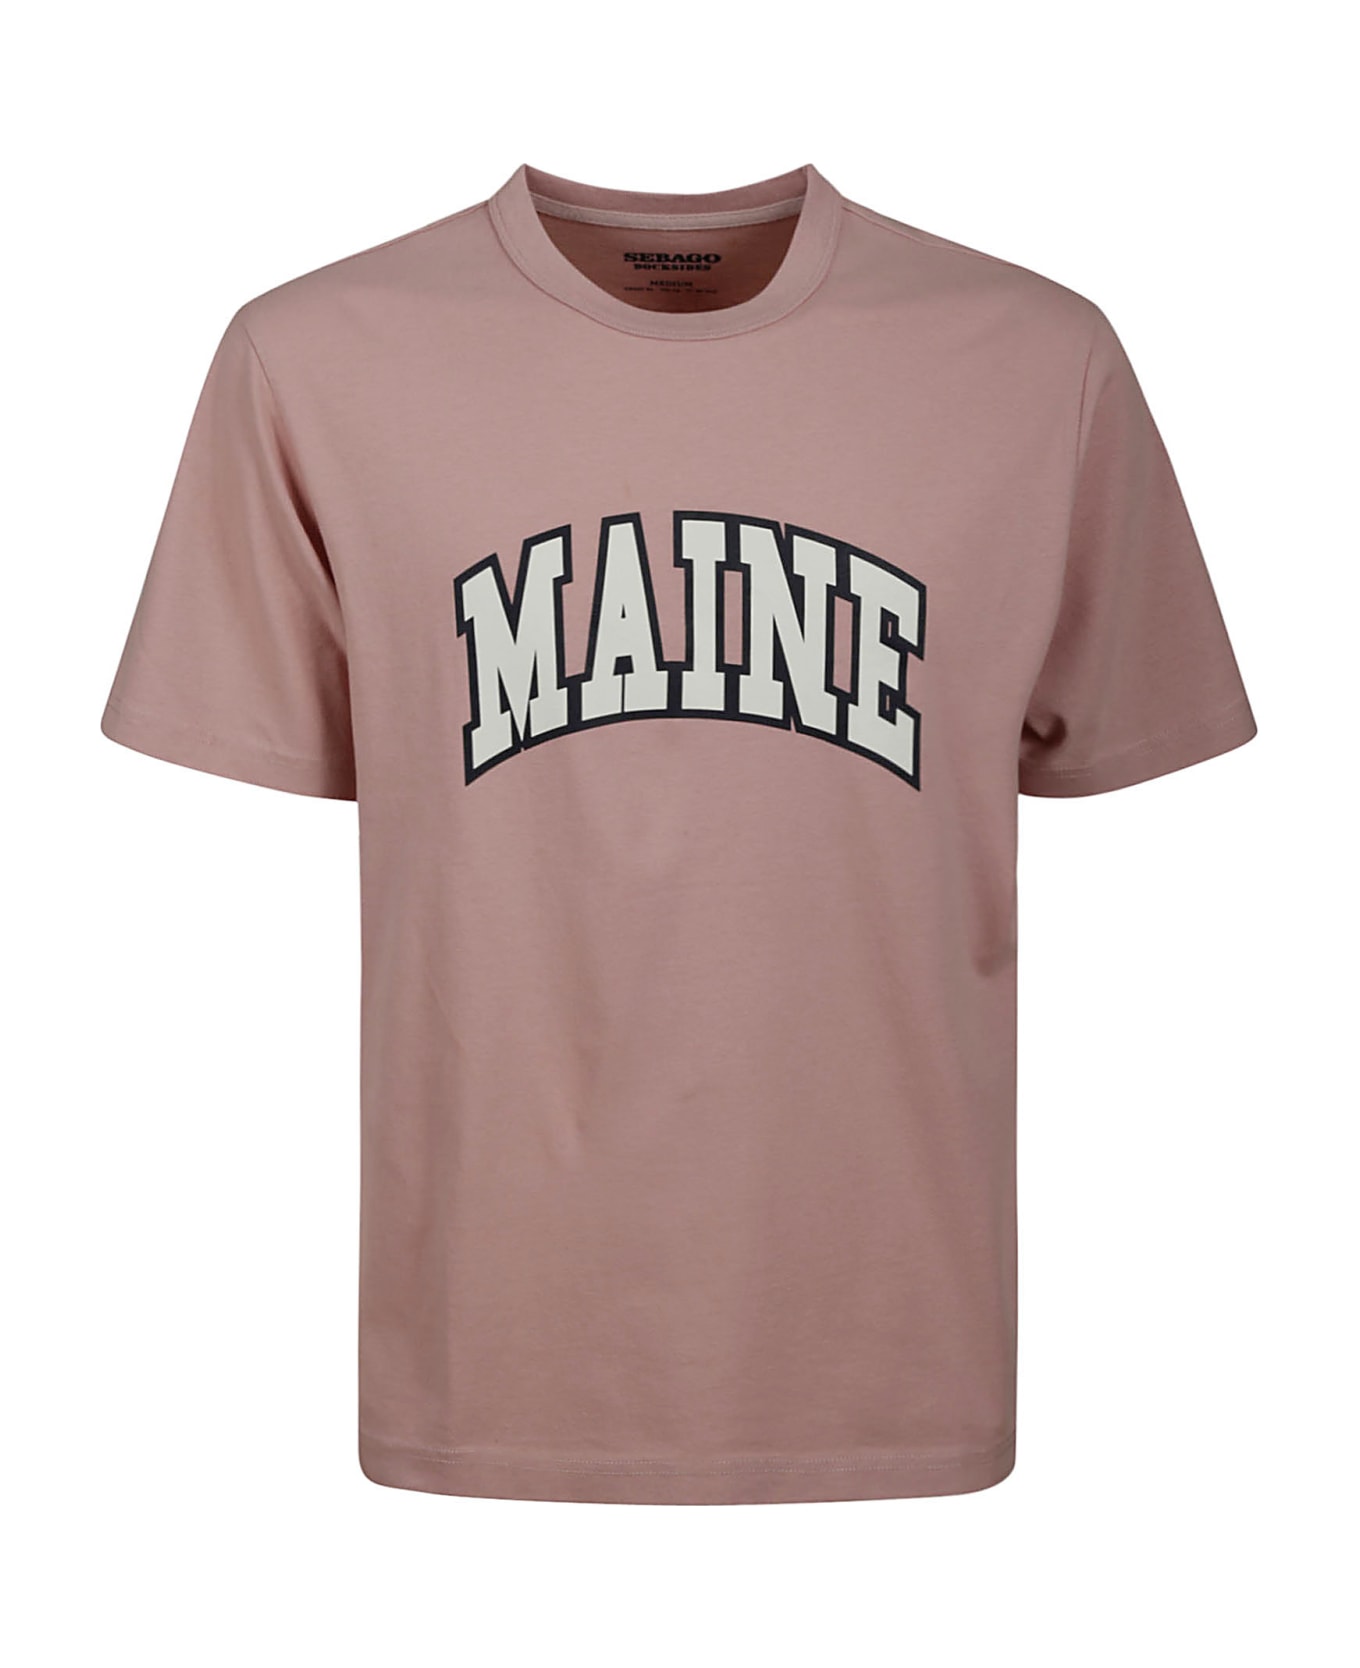 Sebago Danforth - A Pink Maine シャツ